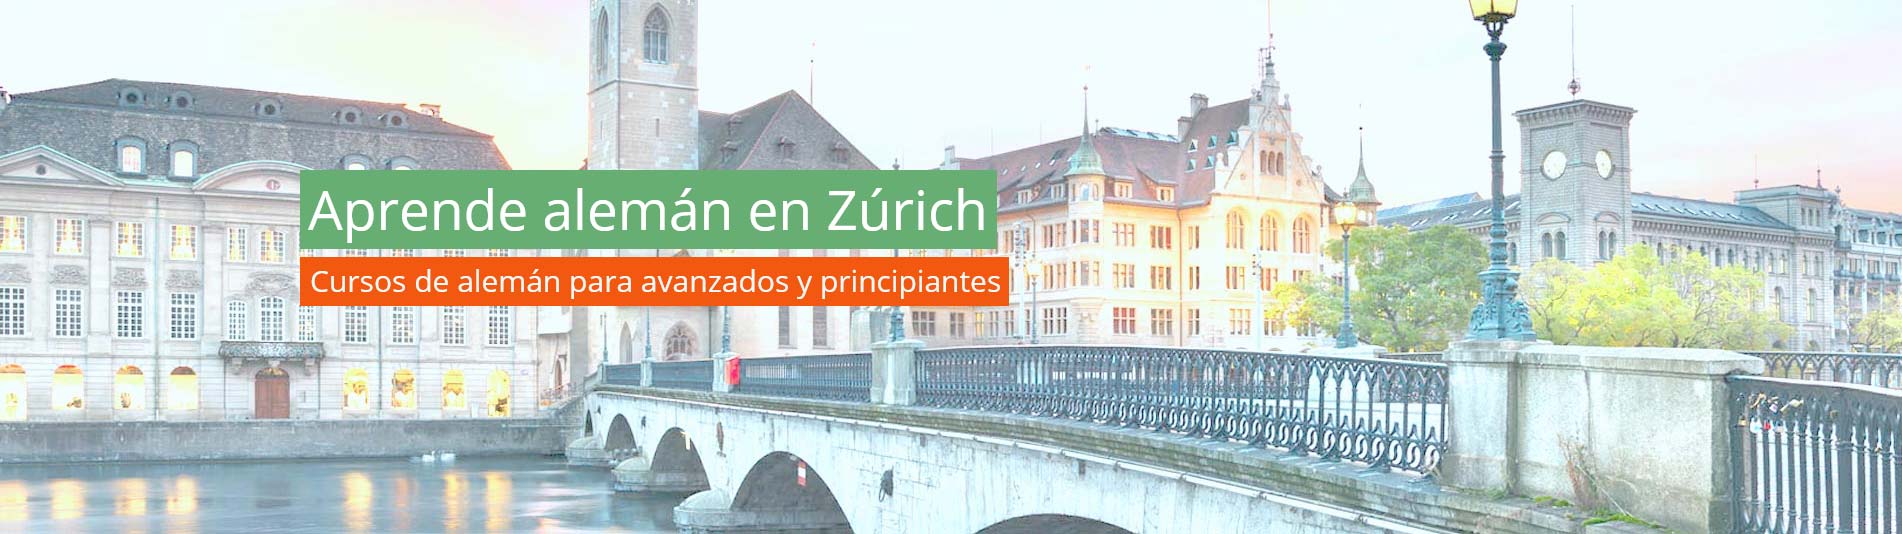 Aprender alemán en Zúrich en la escuela de alemán